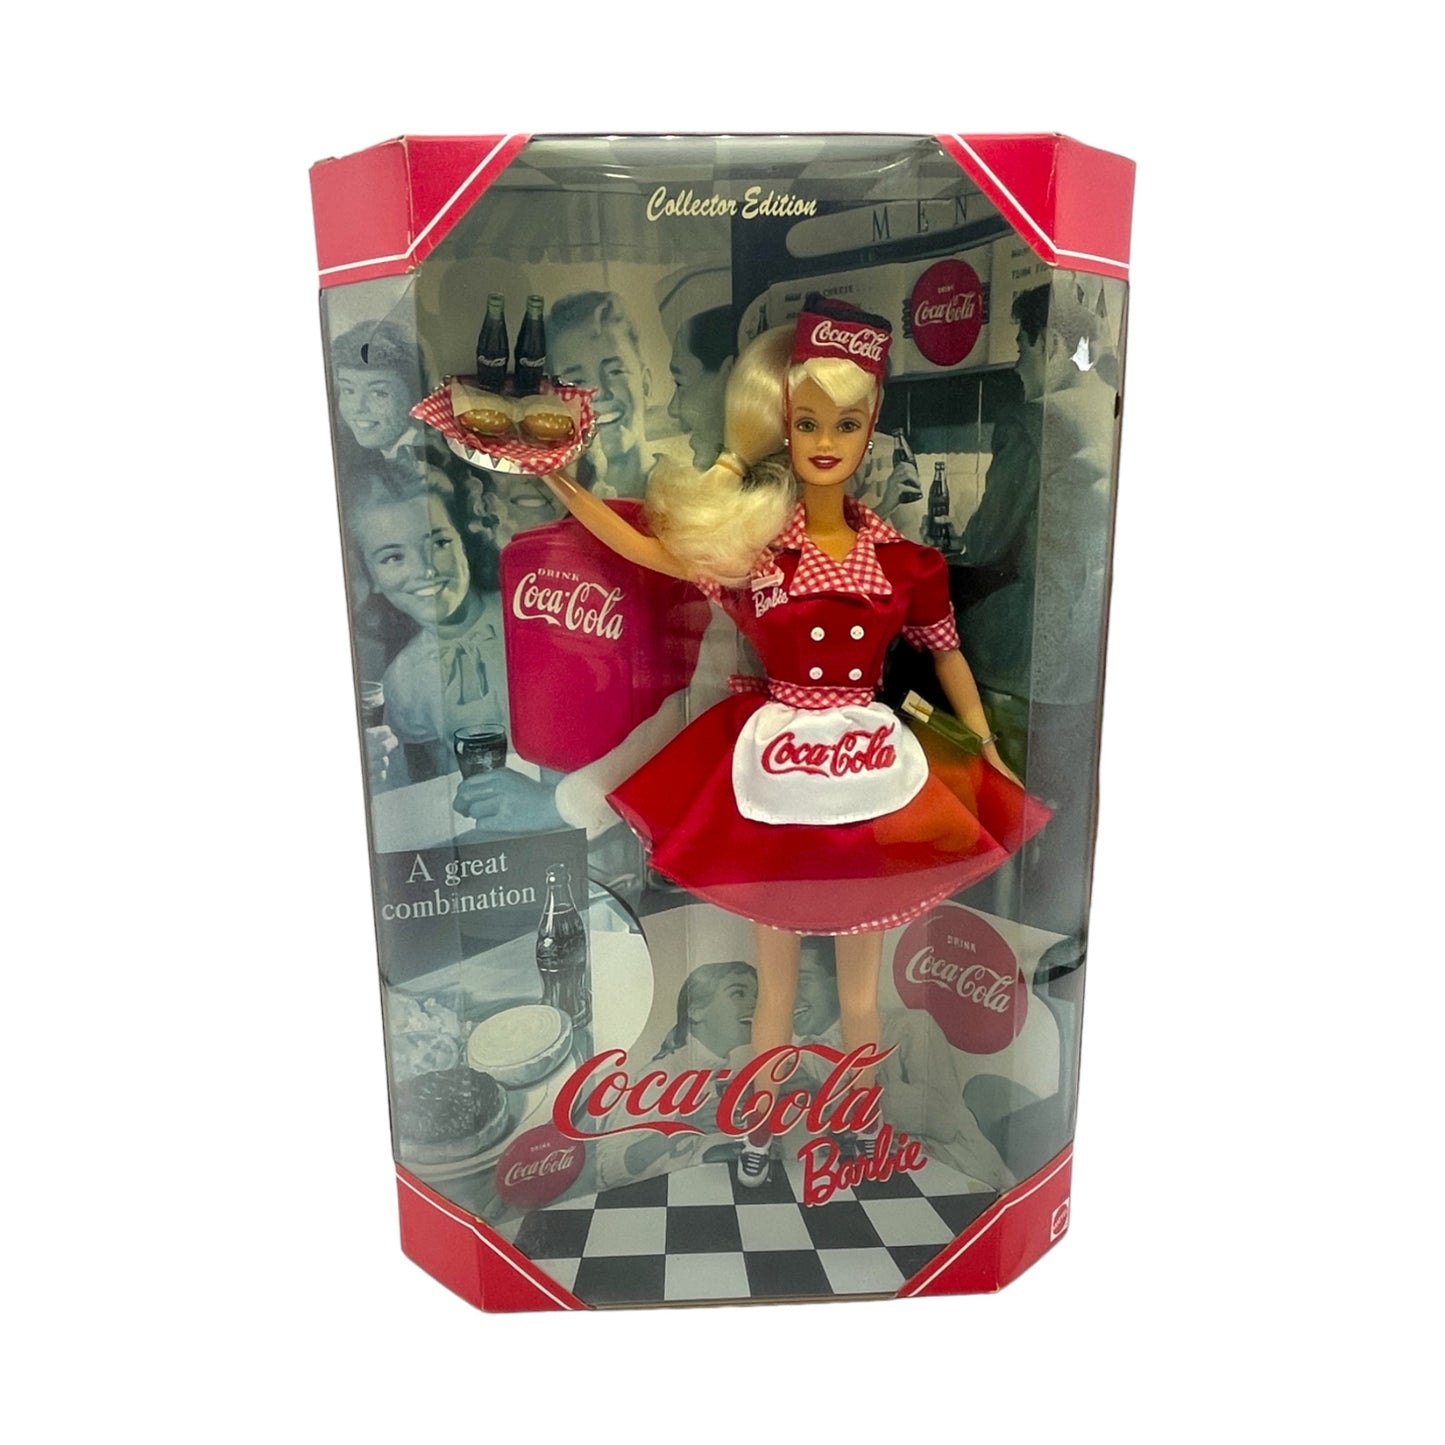 Mattel - Barbie Coca Cola - 1998 Collectors Series  - 22831 - 12"